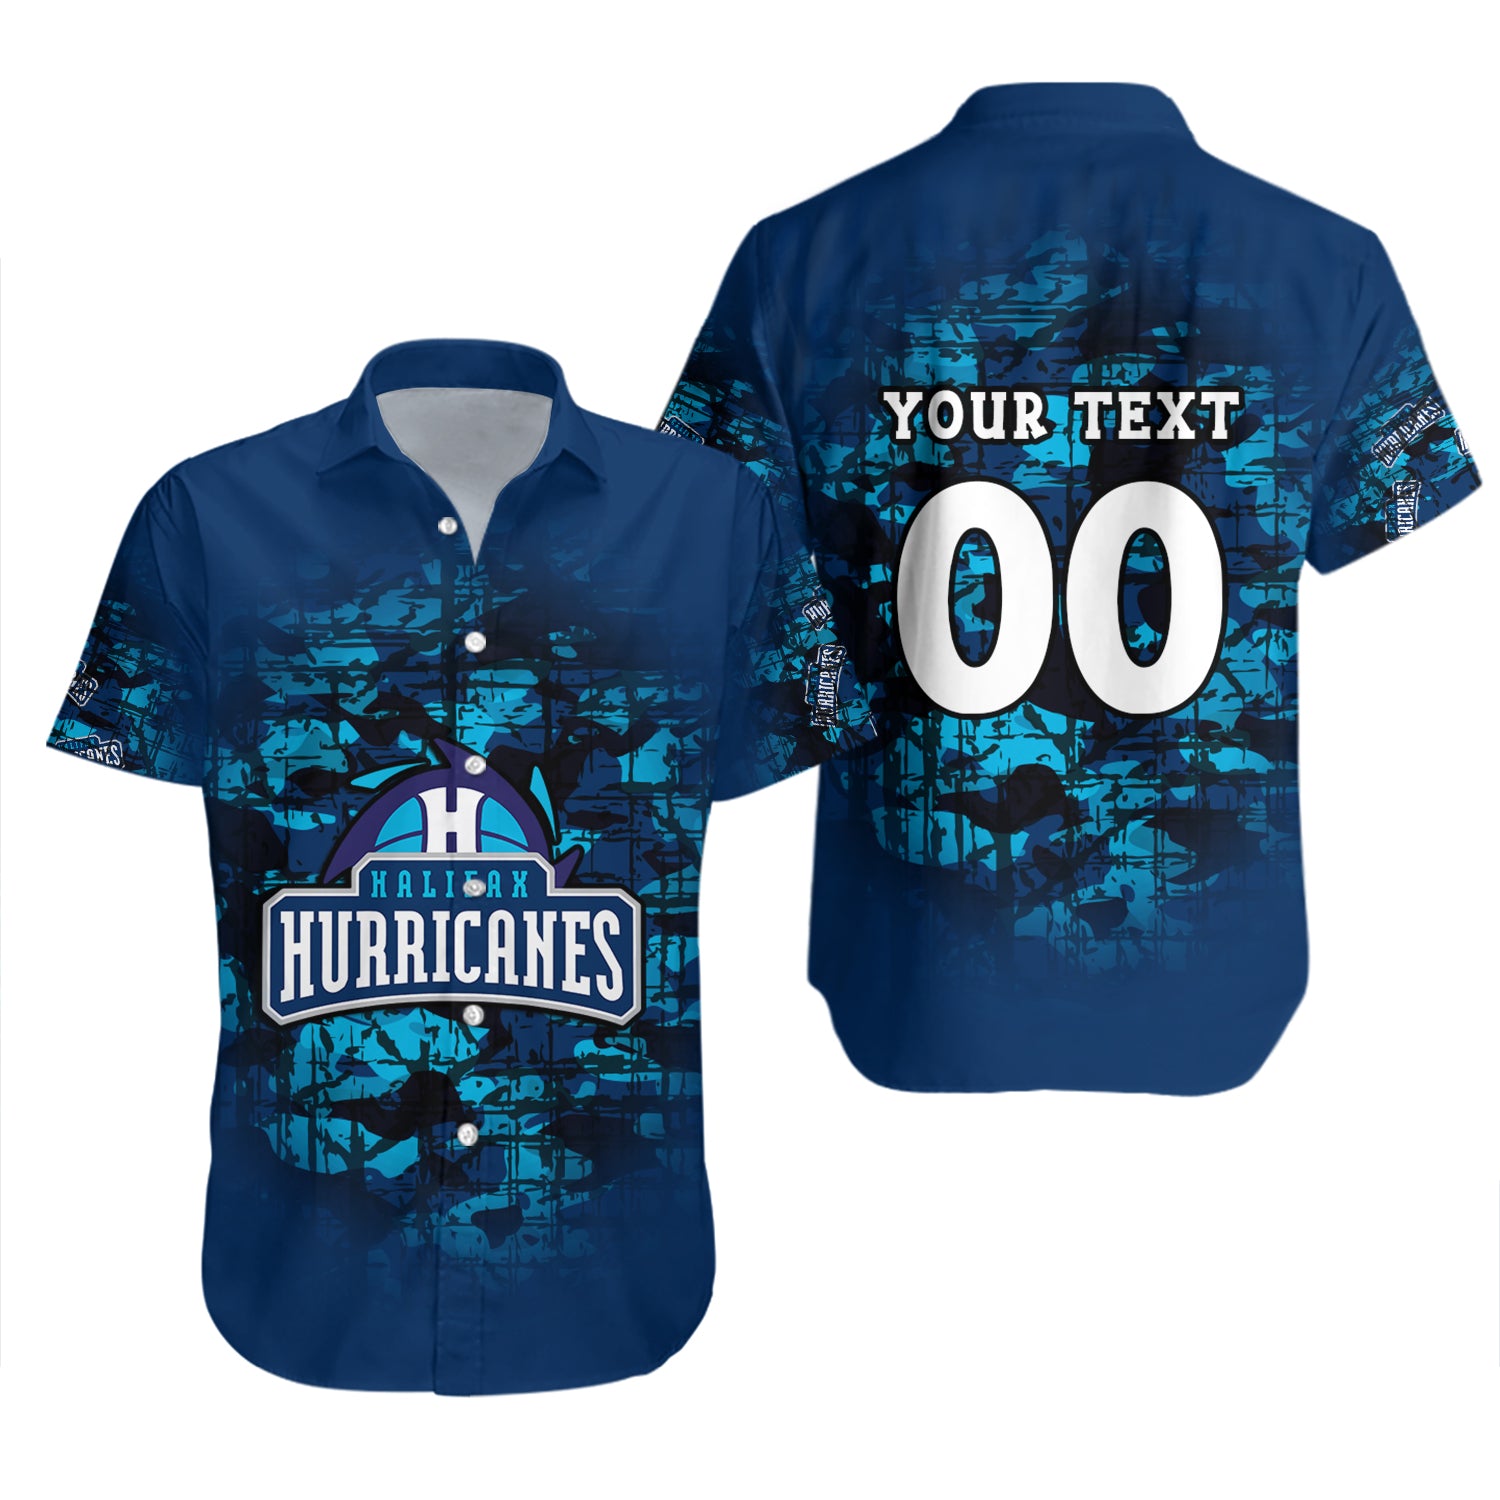 Halifax Hurricanes Hawaiian Shirt Set Camouflage Vintage - CA BASKETBALL 2